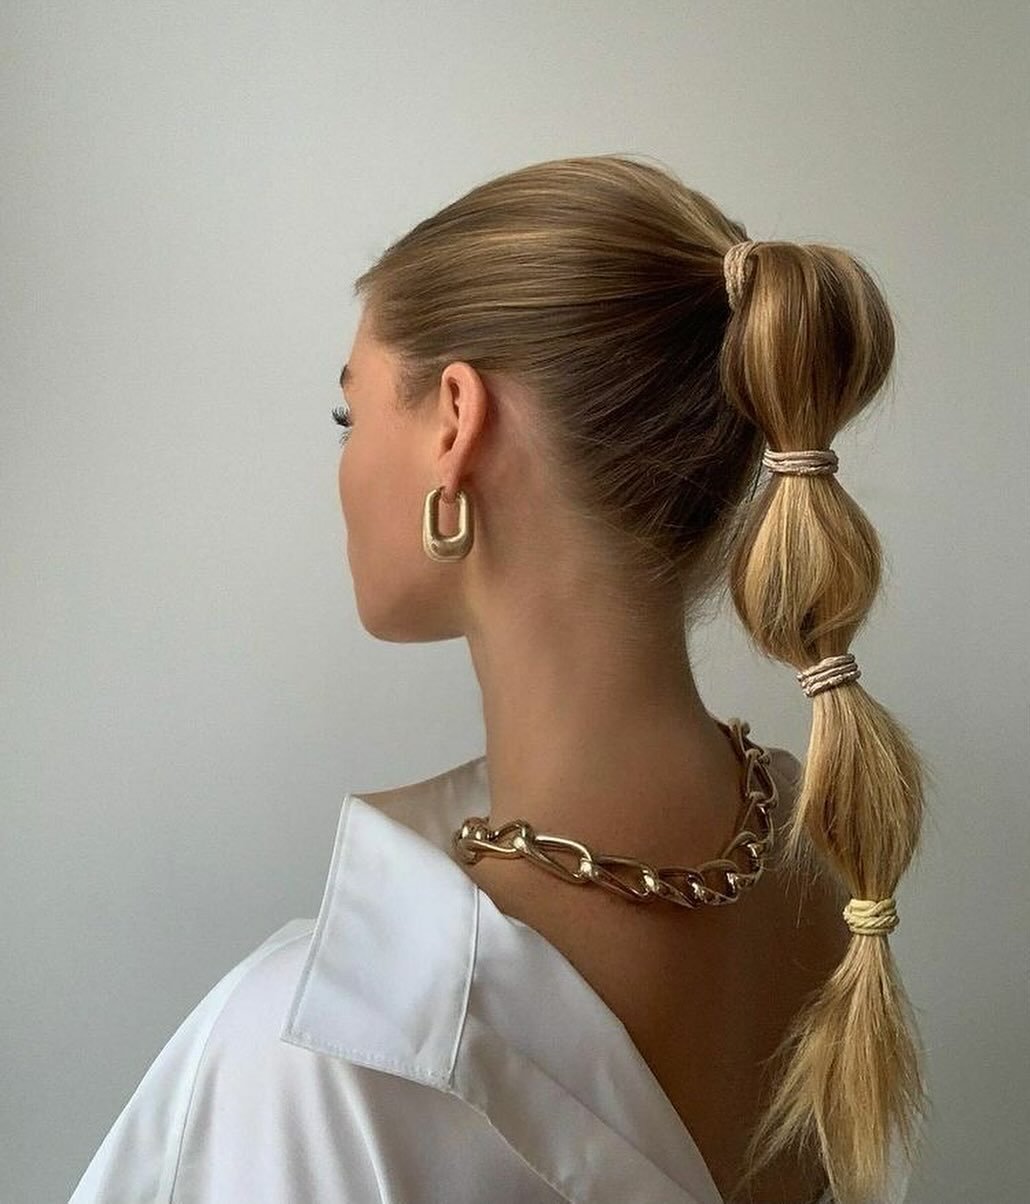 some spring hairstyle inspo 🌸

#queuedecheval #springinspo #hairinspo #ponytail #hairstyleinspo